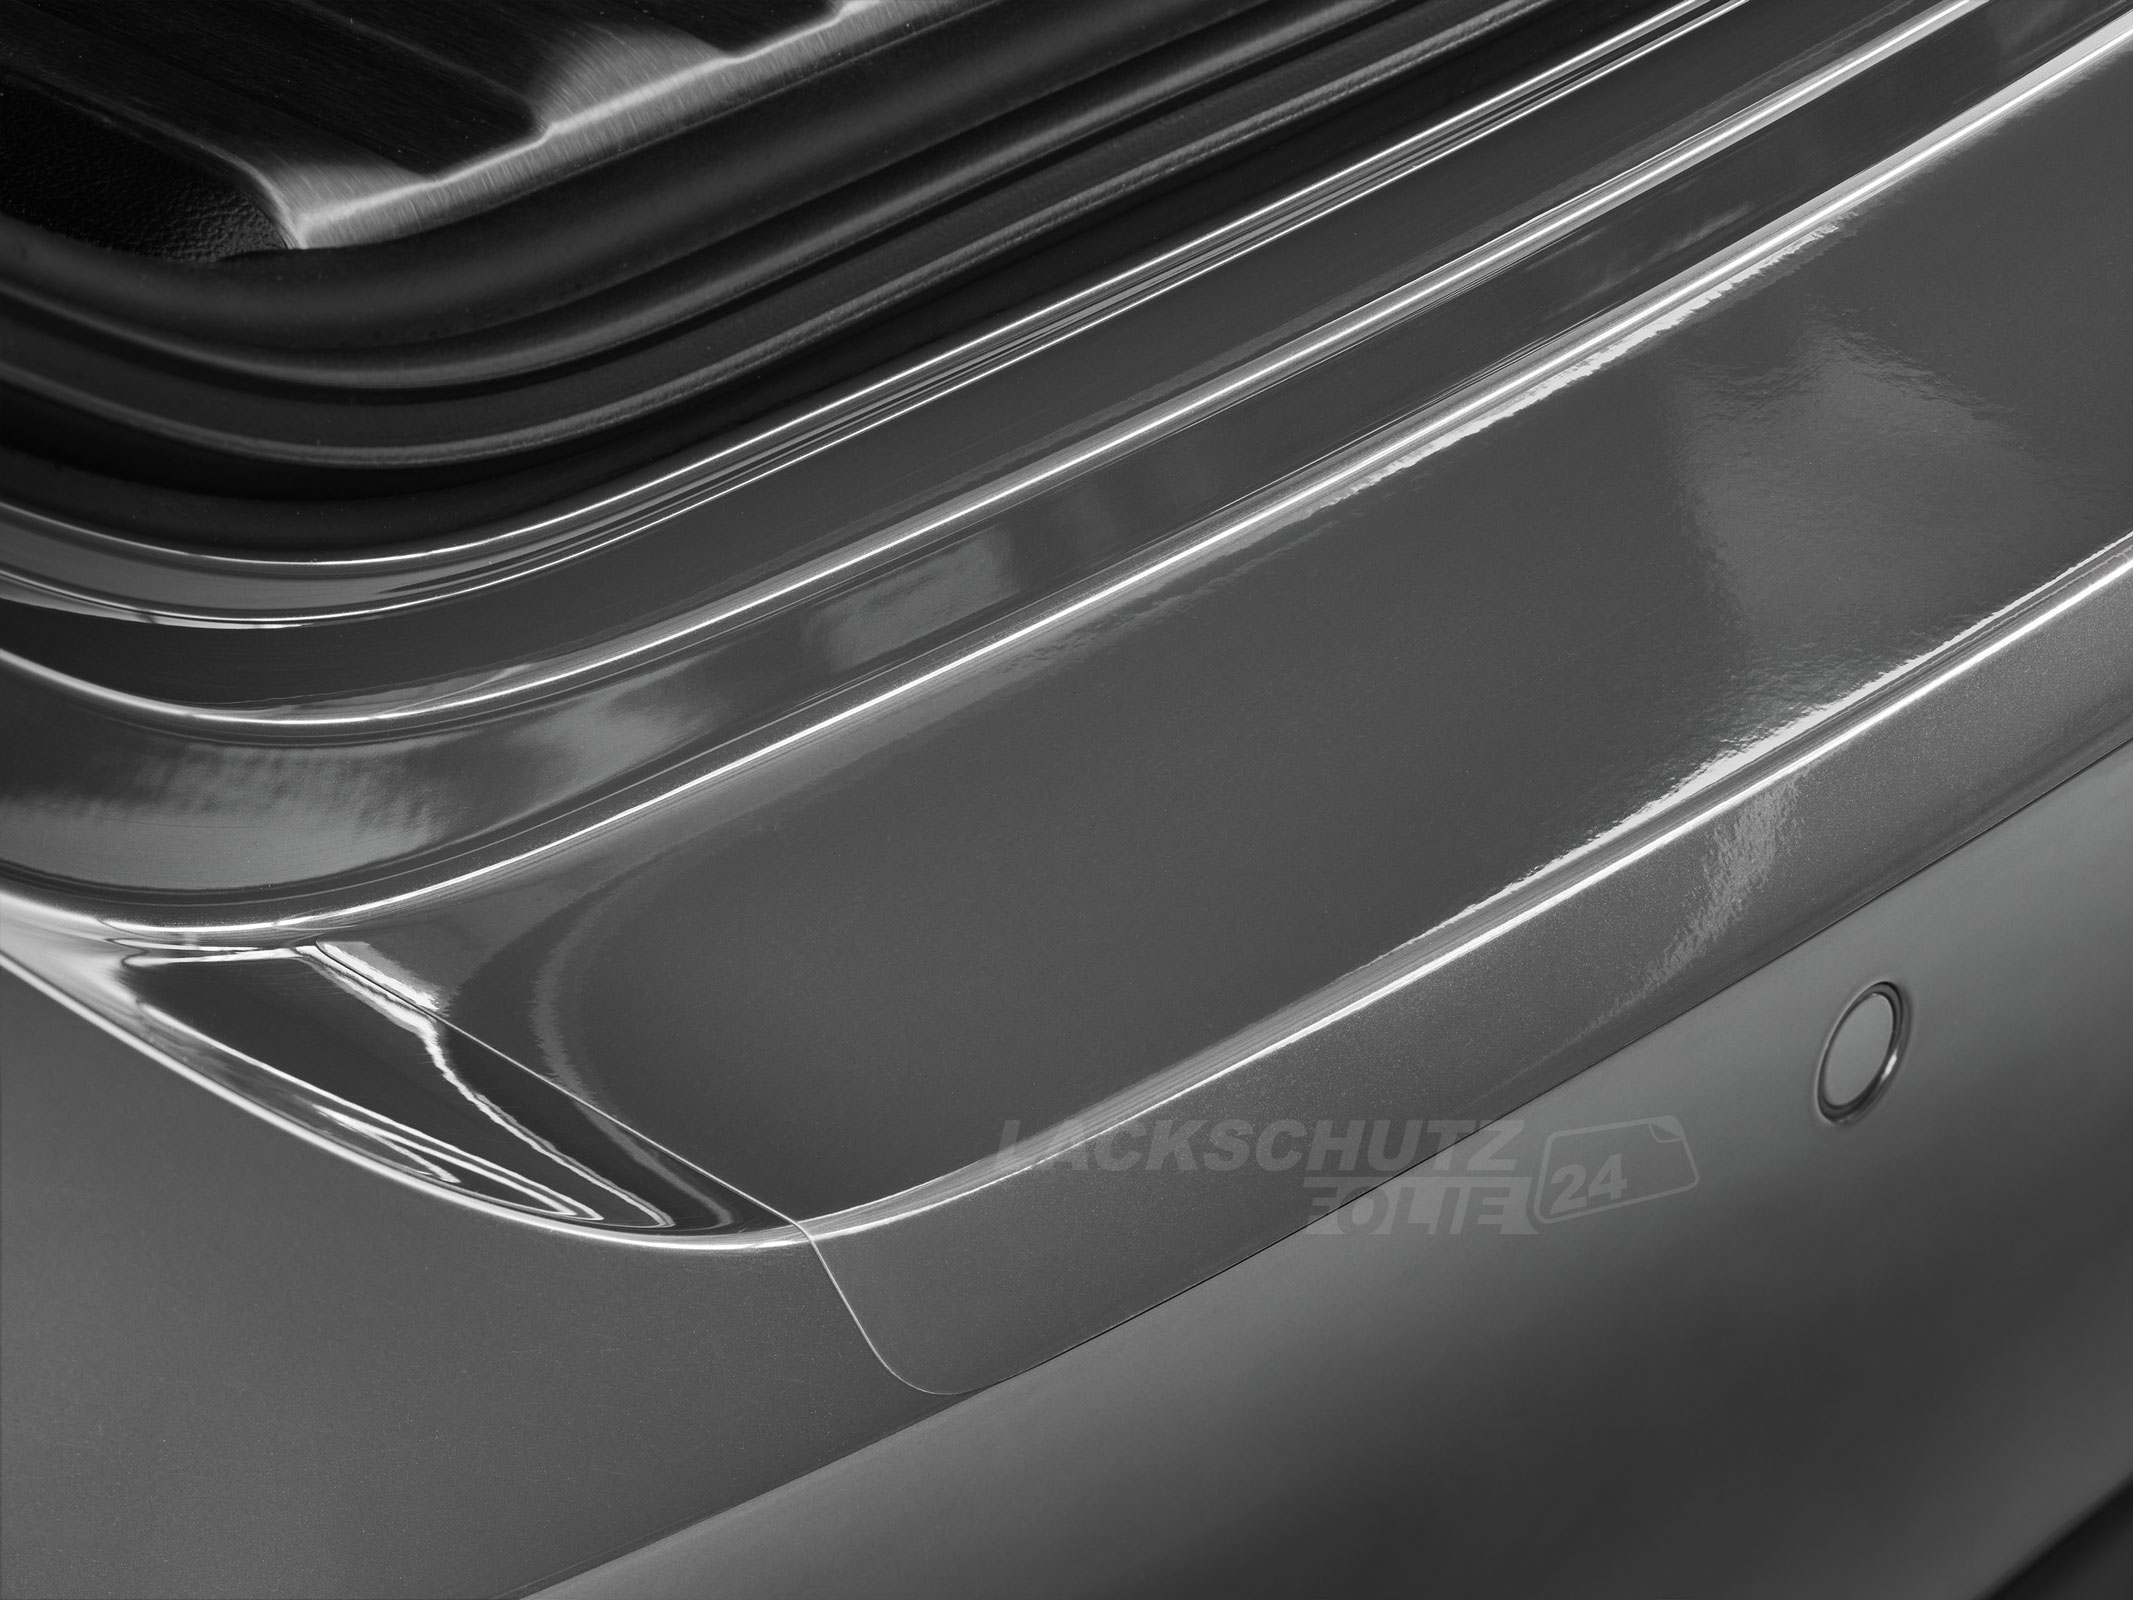 Ladekantenschutzfolie - Transparent Glatt Hochglänzend 150 µm stark für BMW 3er Limousine Typ F30, BJ 2012-03/2019